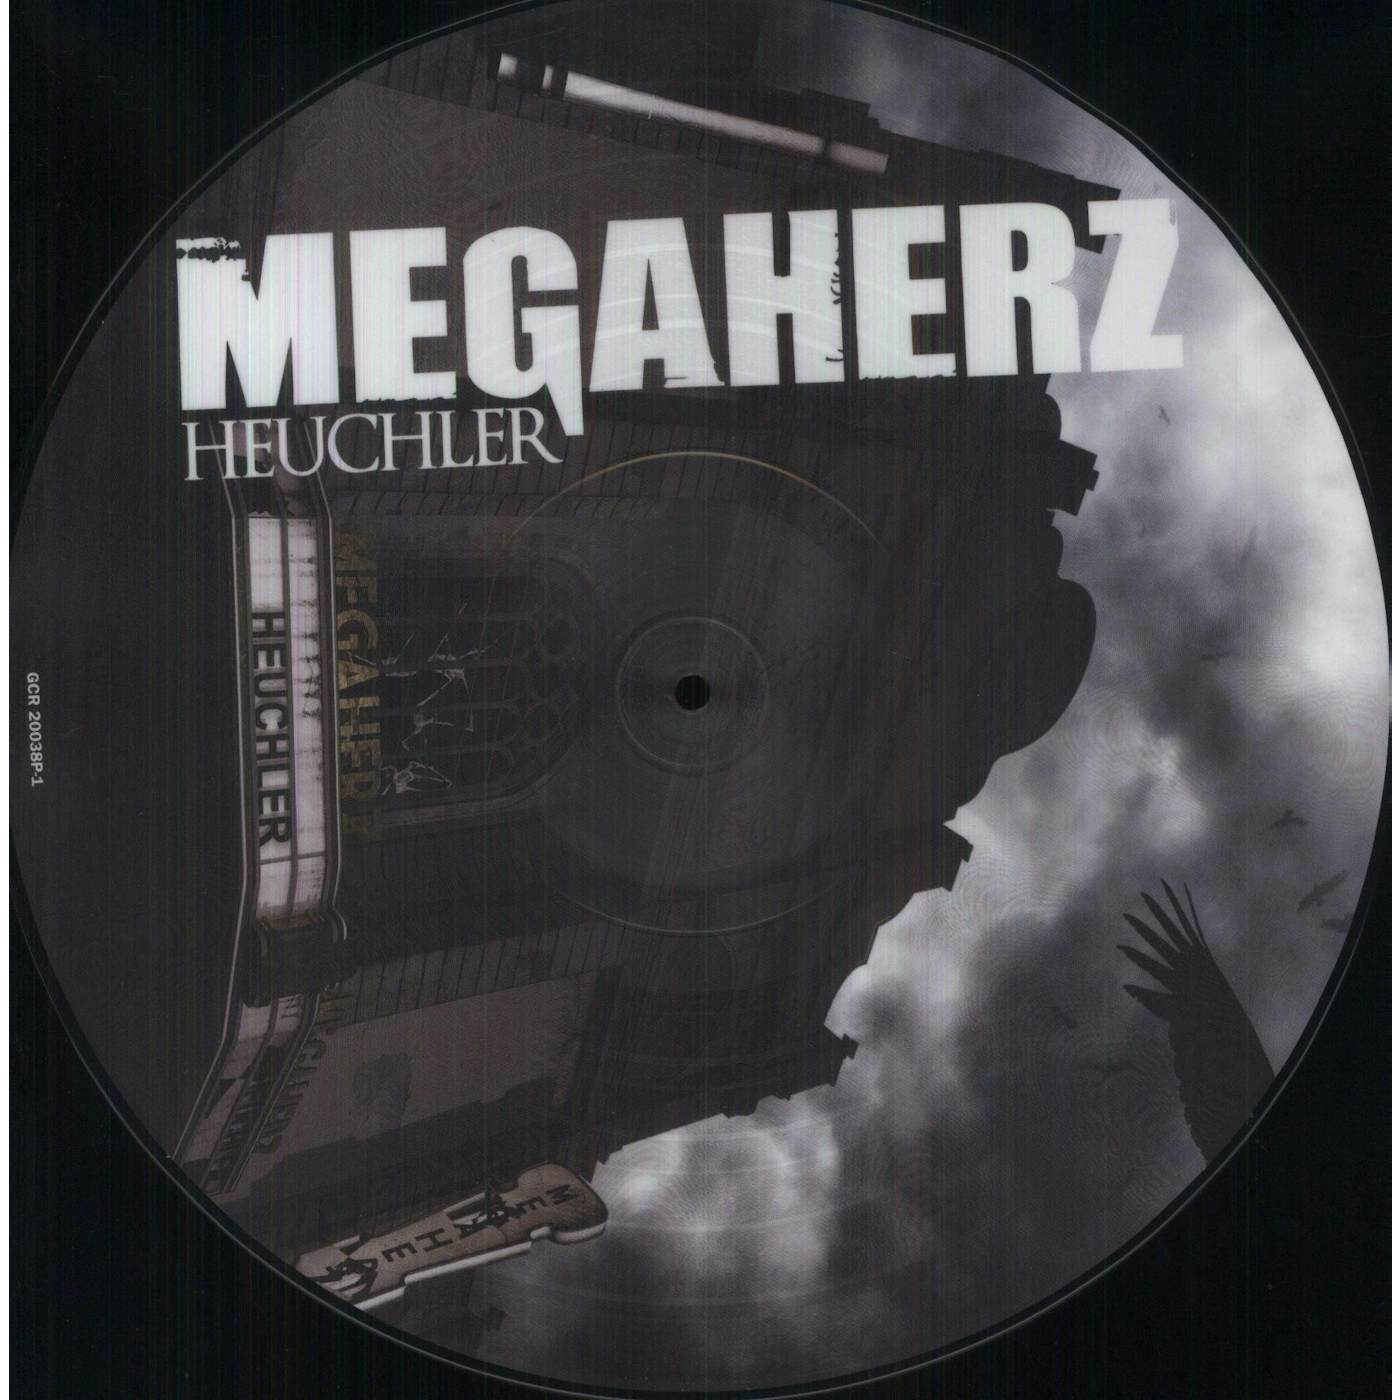 Megaherz Heuchler Vinyl Record